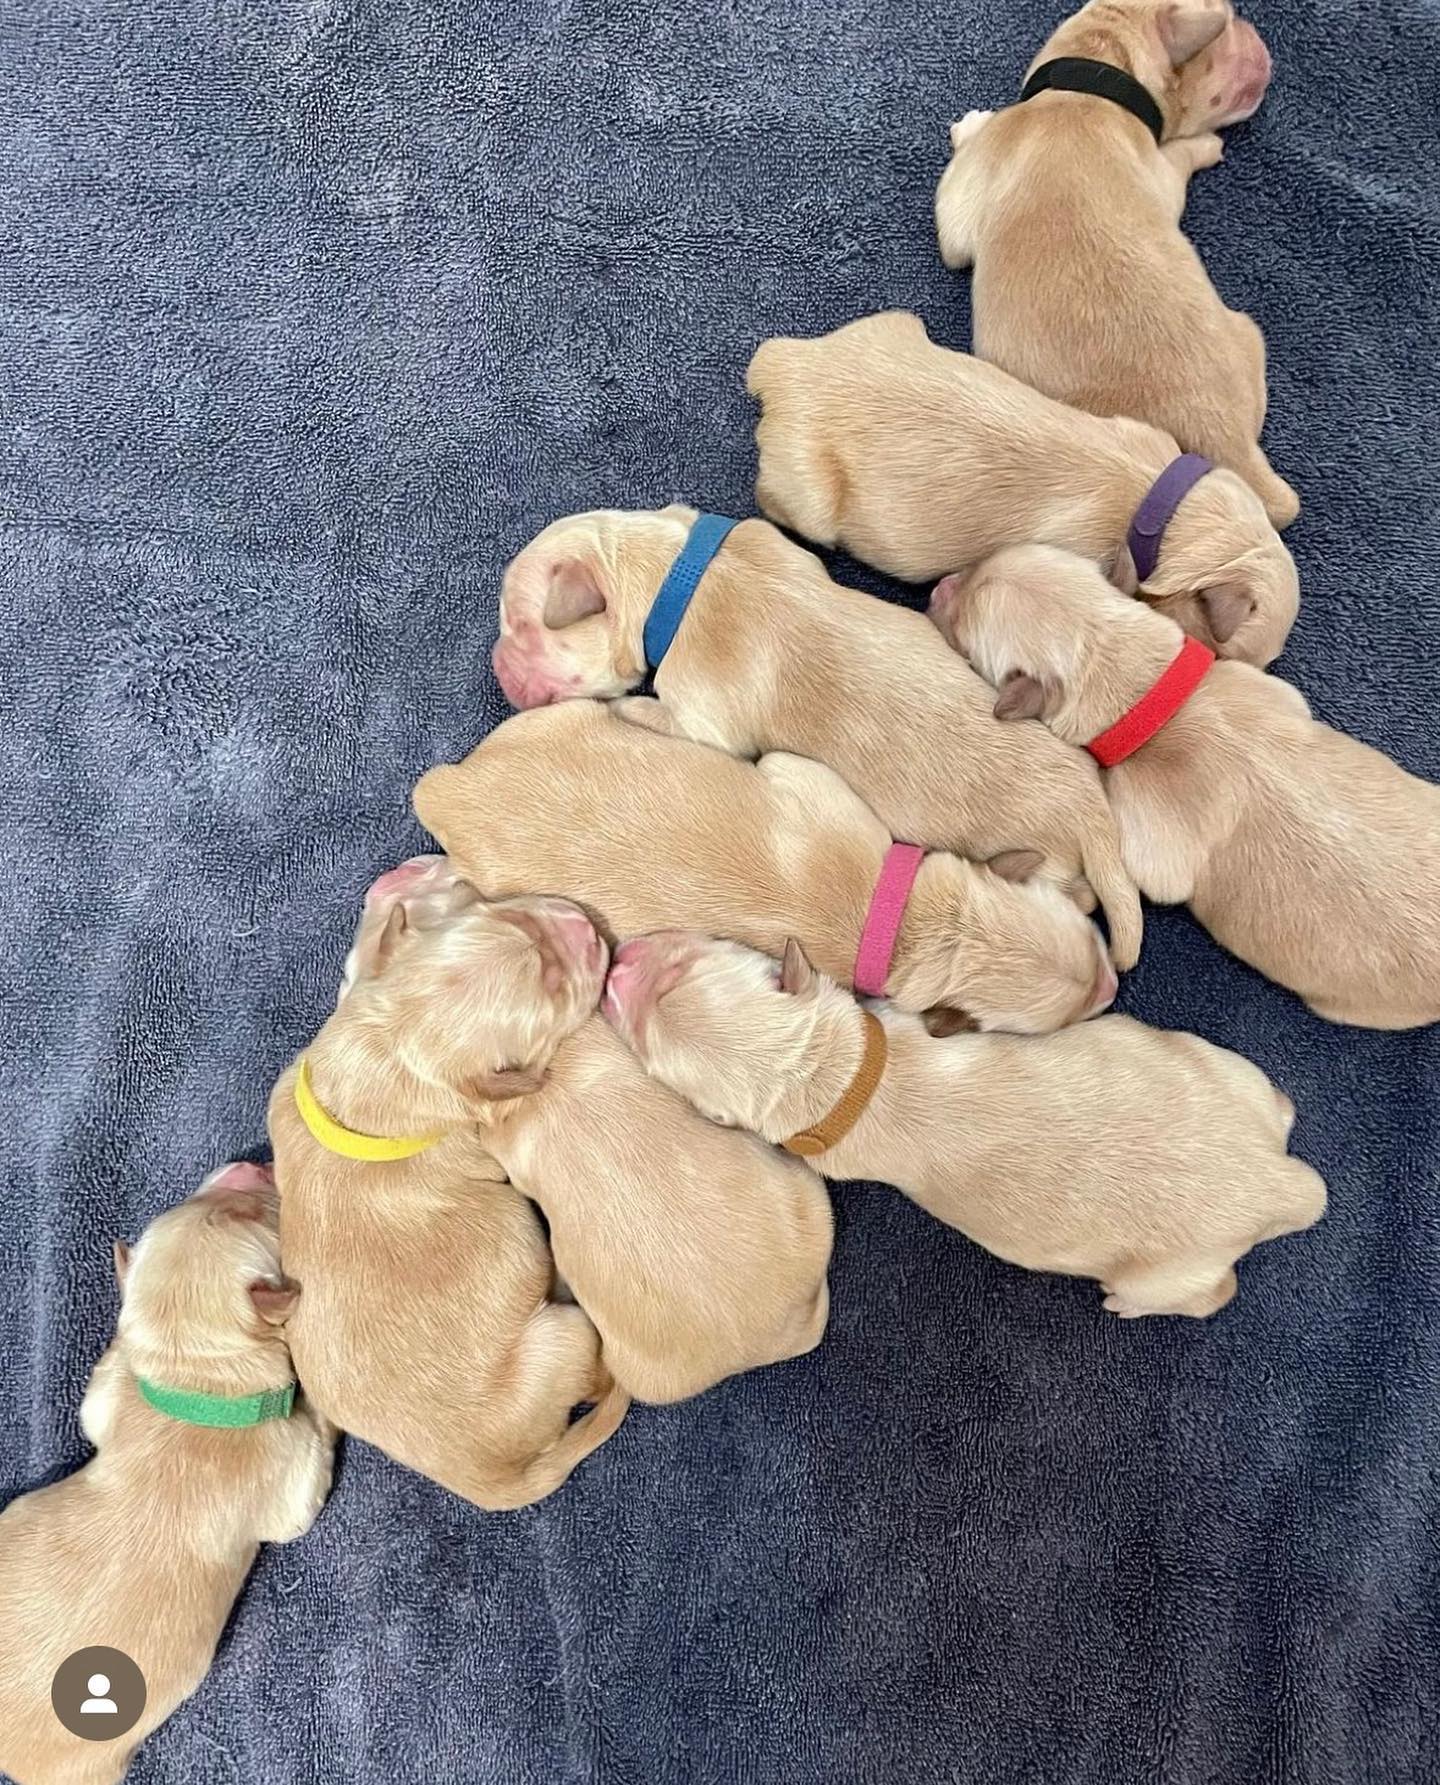 Nine newborn golden retriever puppies sleeping in a heap.